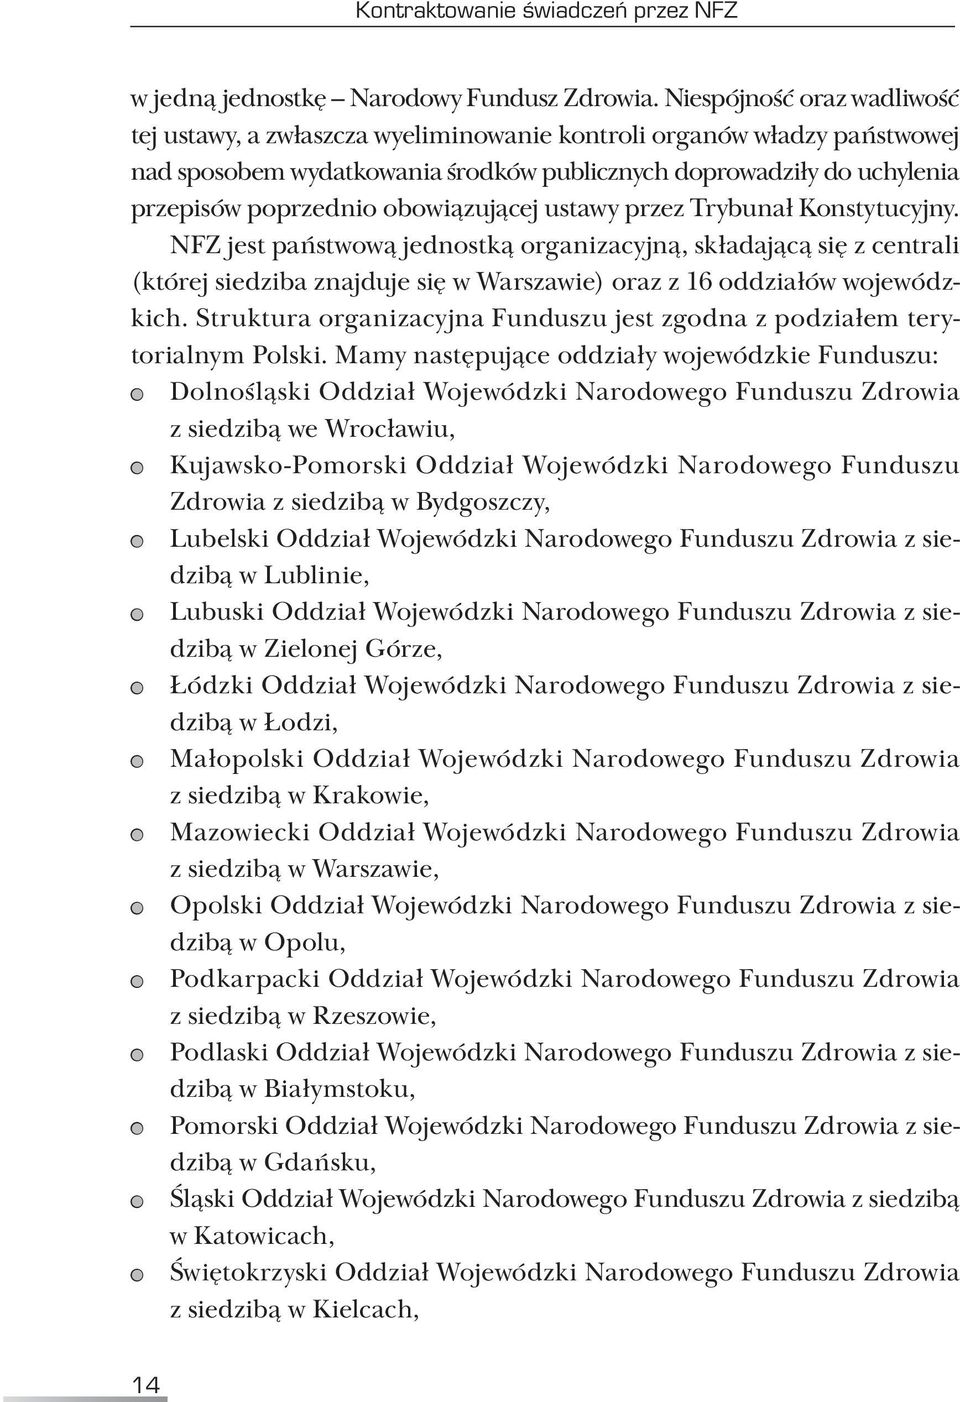 obowiązującej ustawy przez Trybunał Konstytucyjny. NFZ jest państwową jednostką organizacyjną, składającą się z centrali (której siedziba znajduje się w Warszawie) oraz z 16 oddziałów wojewódzkich.